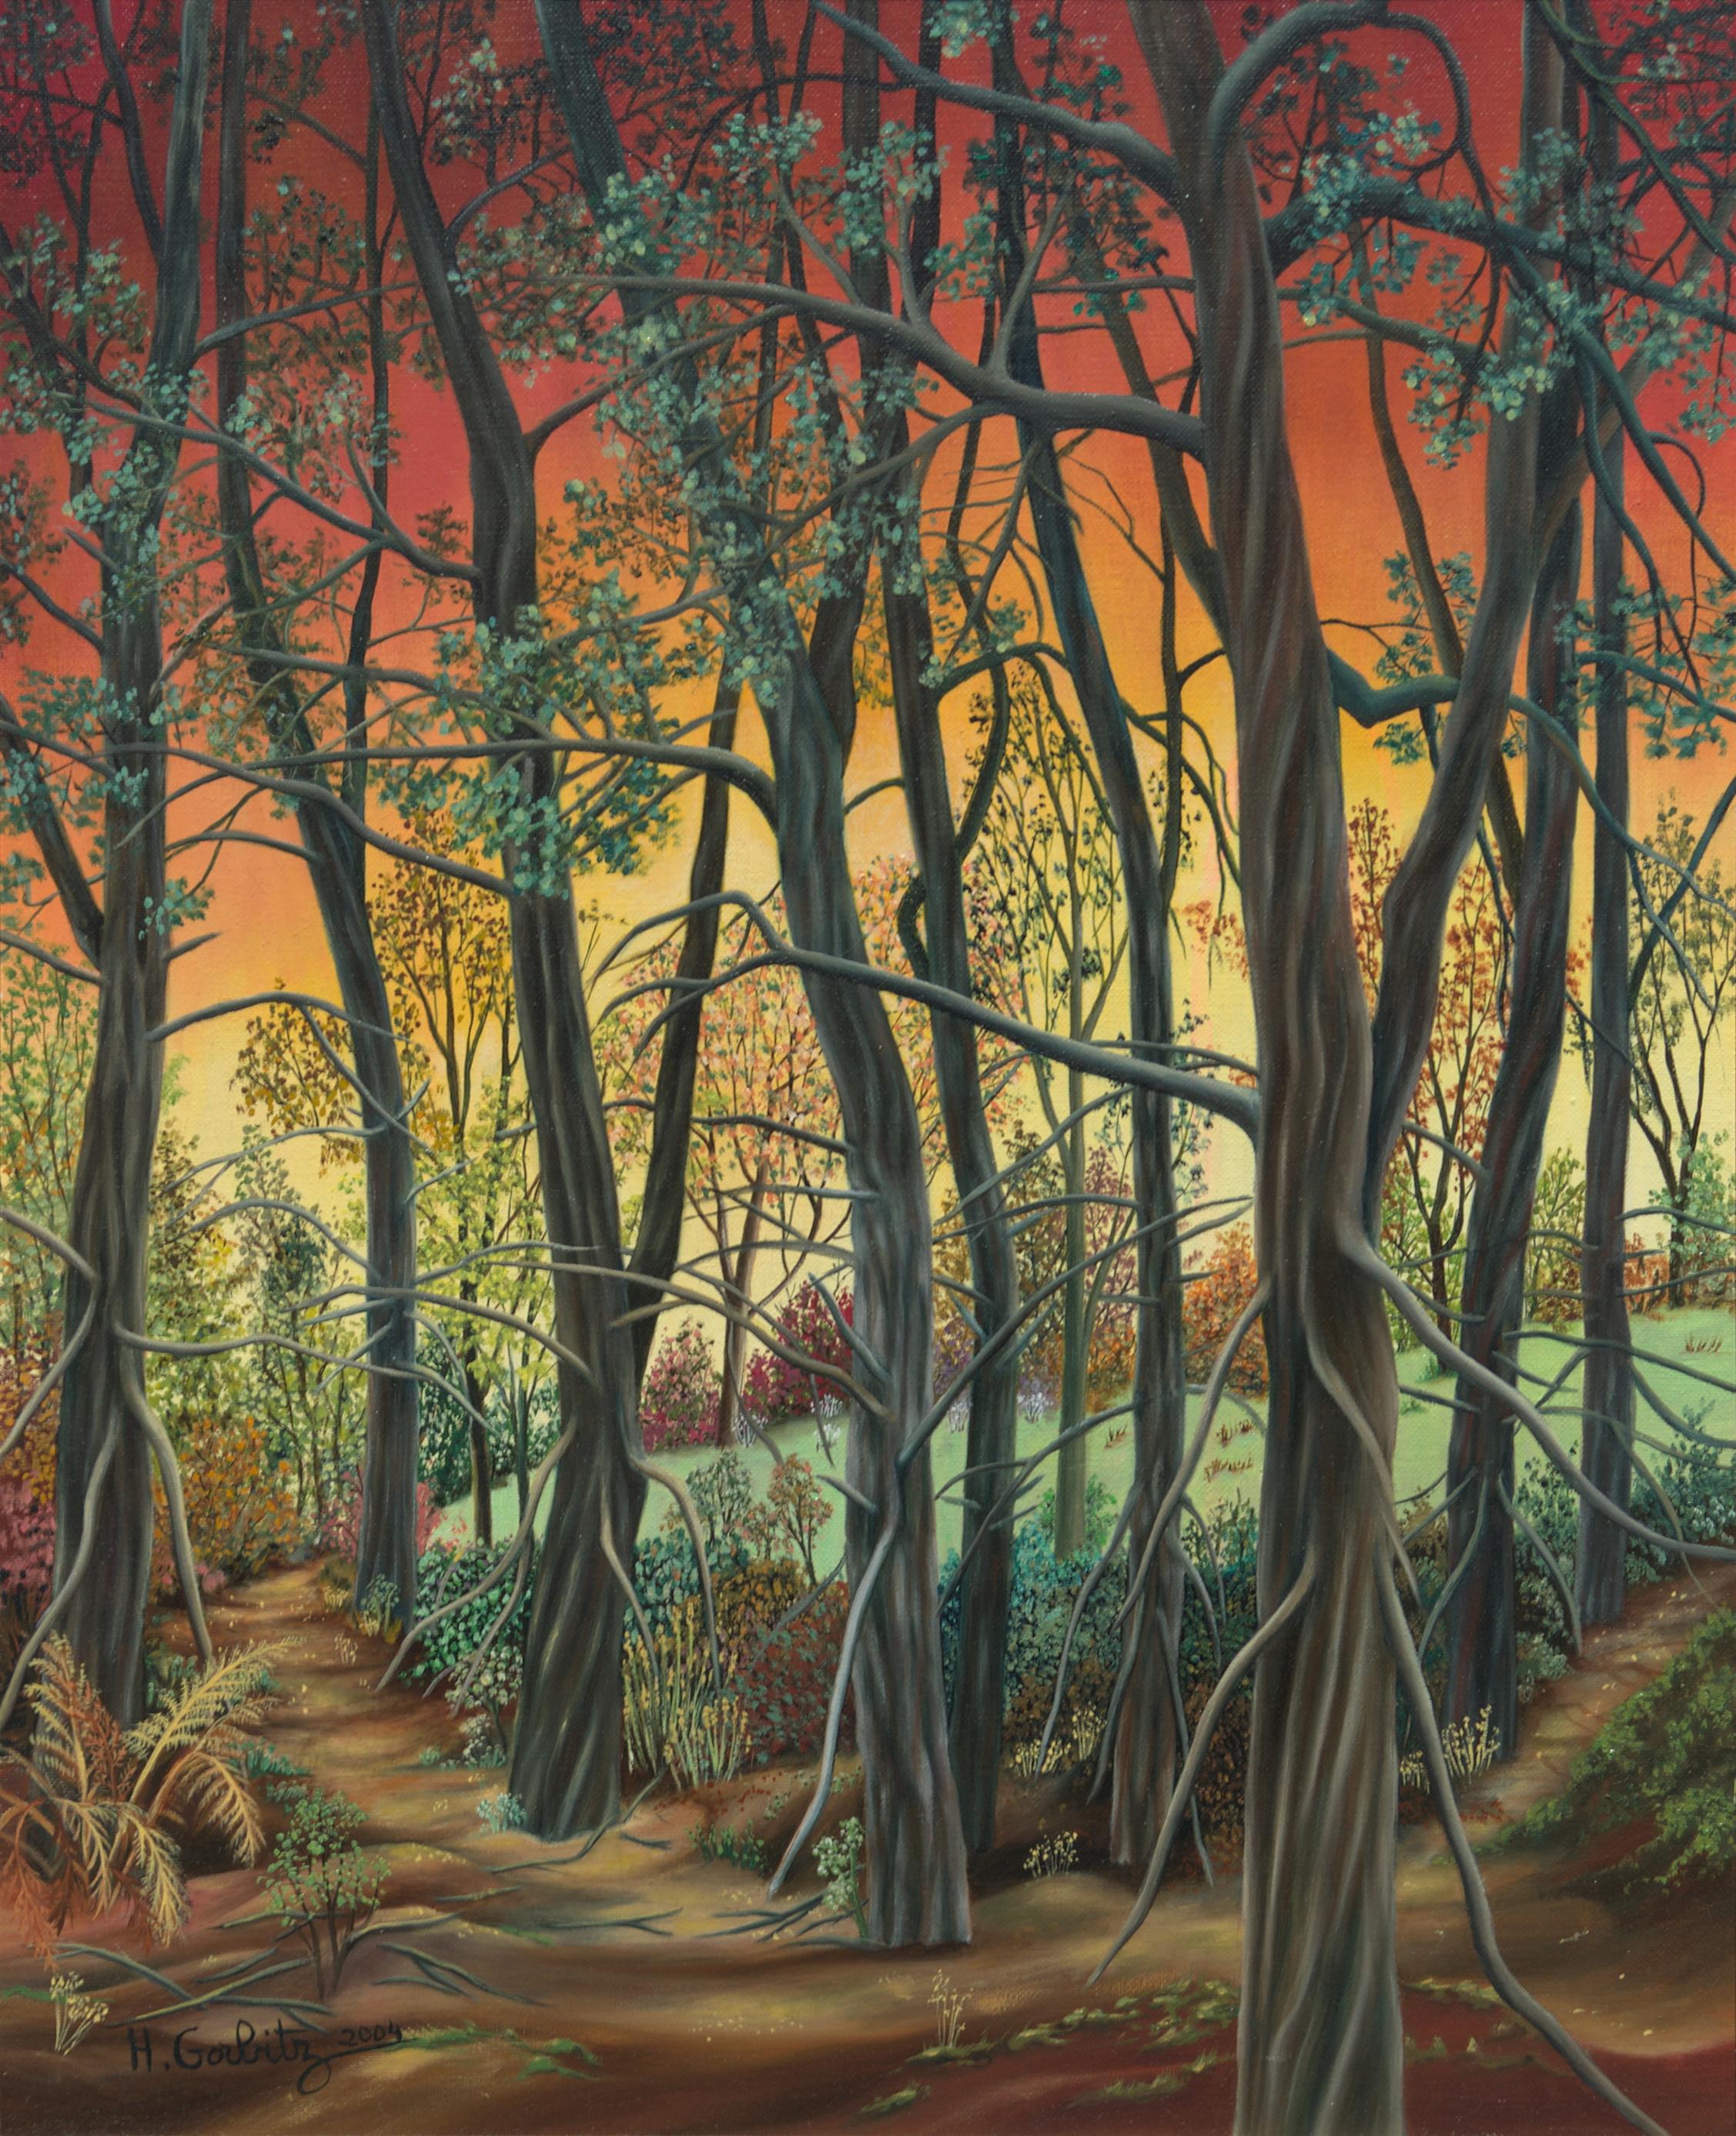 „“ Wald“, Entschlossene Bäume am Sonnenuntergang Landschaft Naive/ Primitivistisches Acrylgemälde – Painting von Henriette Gorbitz